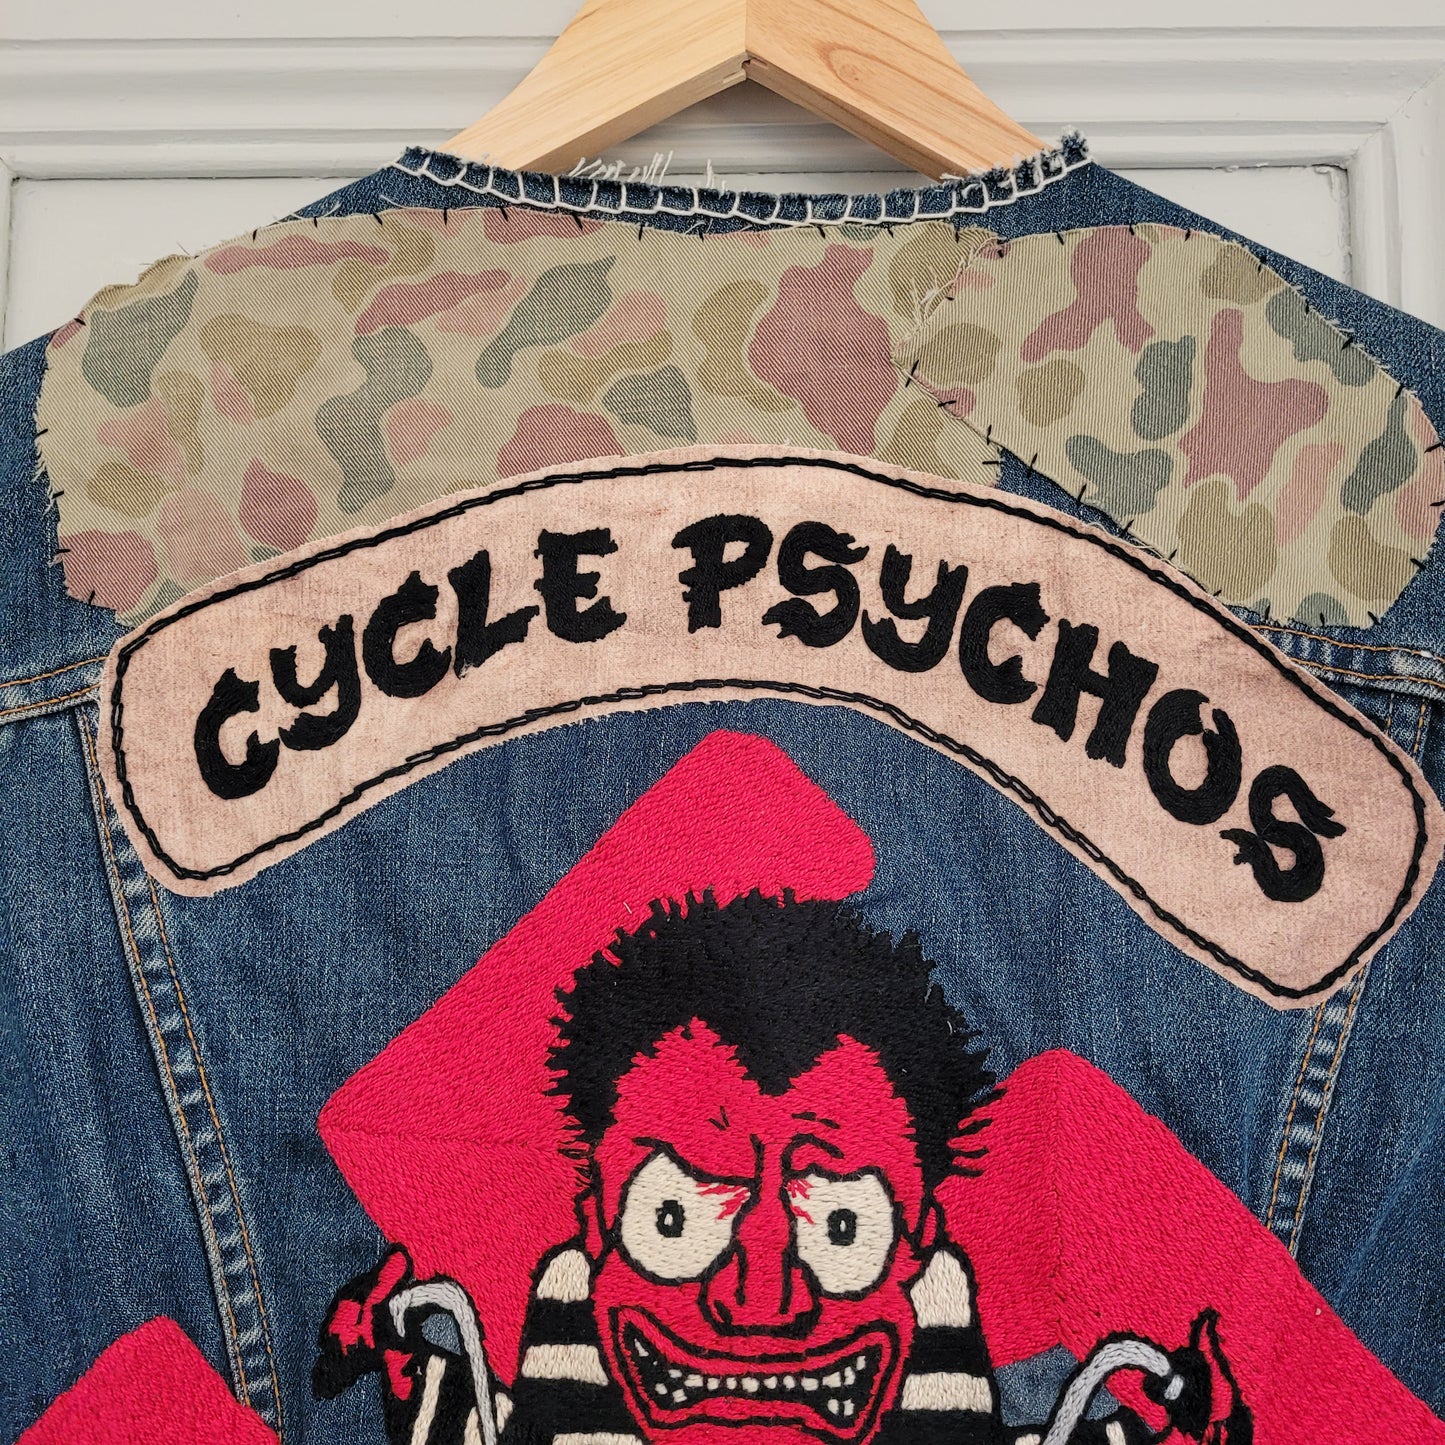 "Cycle psychos" chainstitched by hand Levi's Jacket/ Veste levis vintage brodée main et patchée